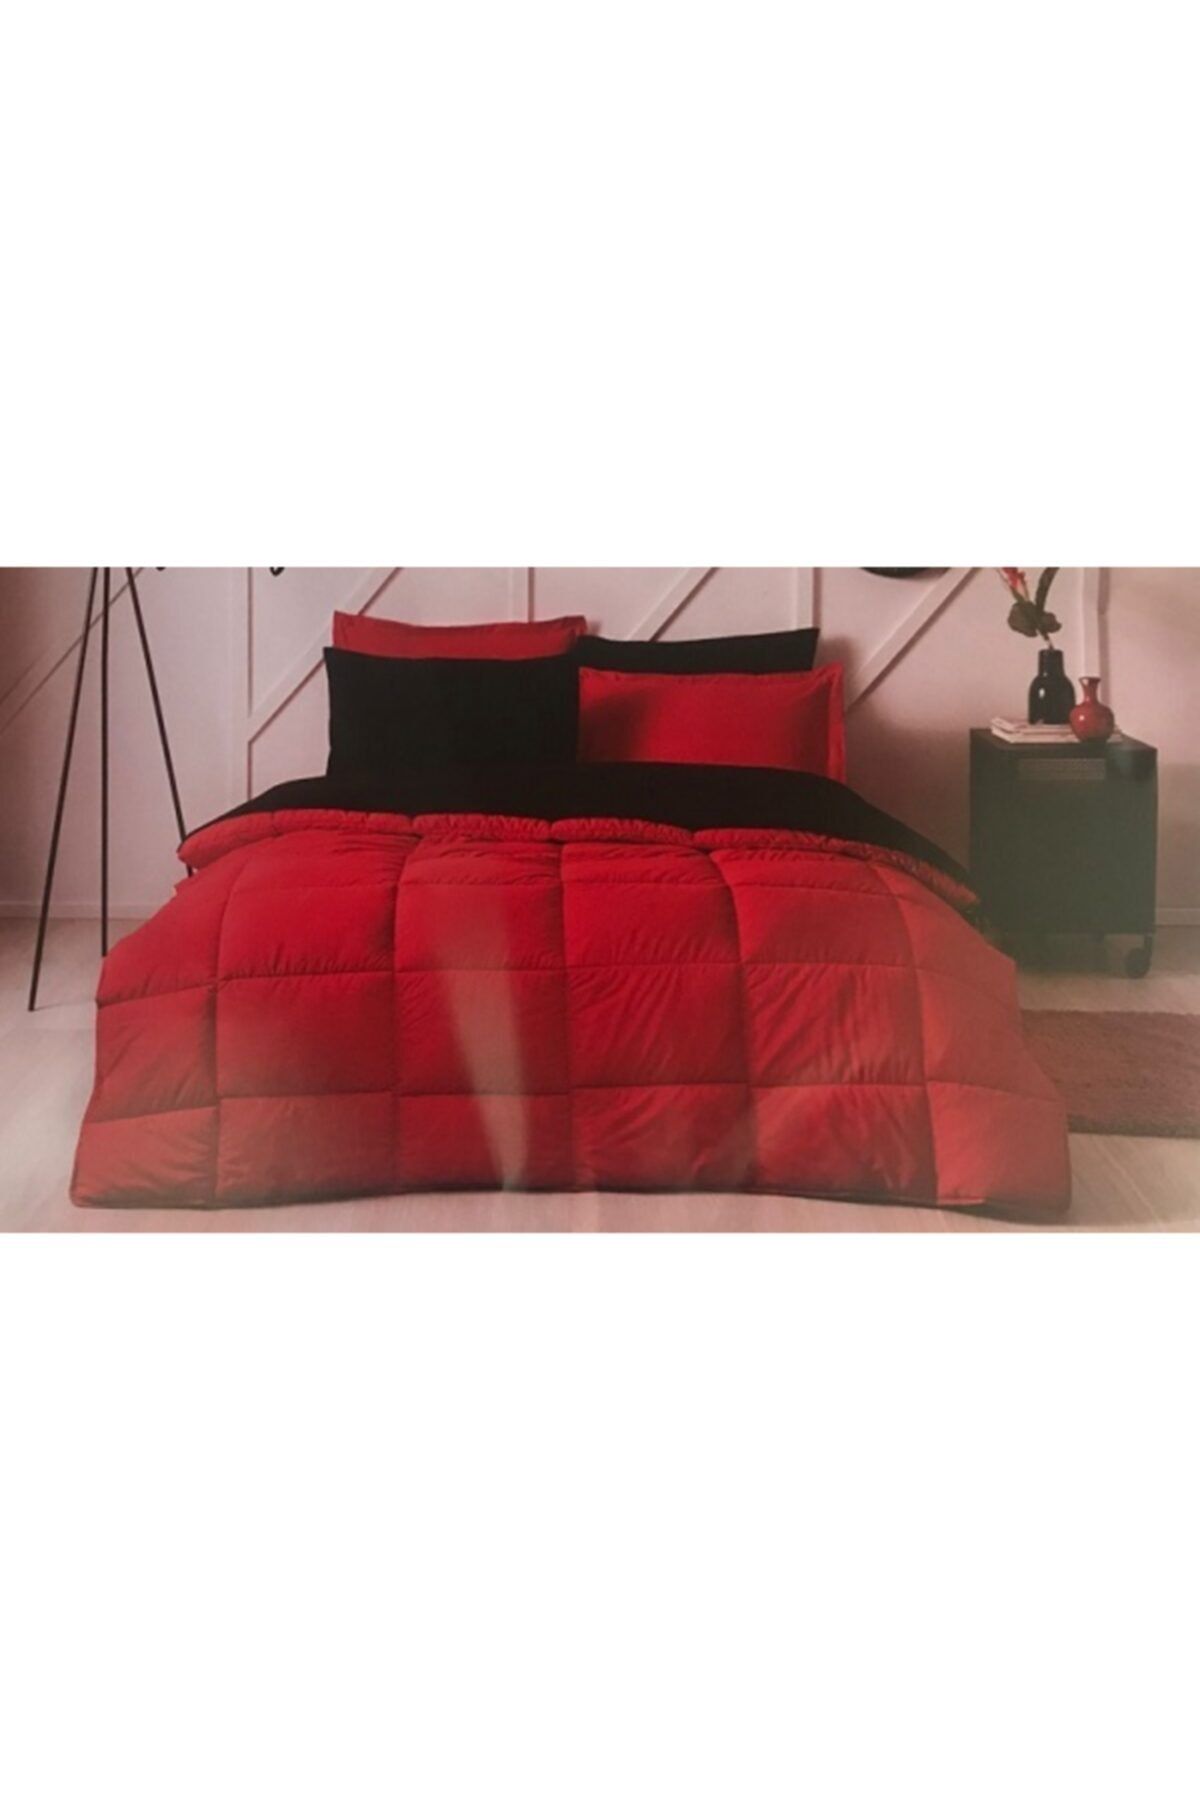 Özdilek Colormix Çift Kişilik Uyku Seti Kırmızı - Siyah